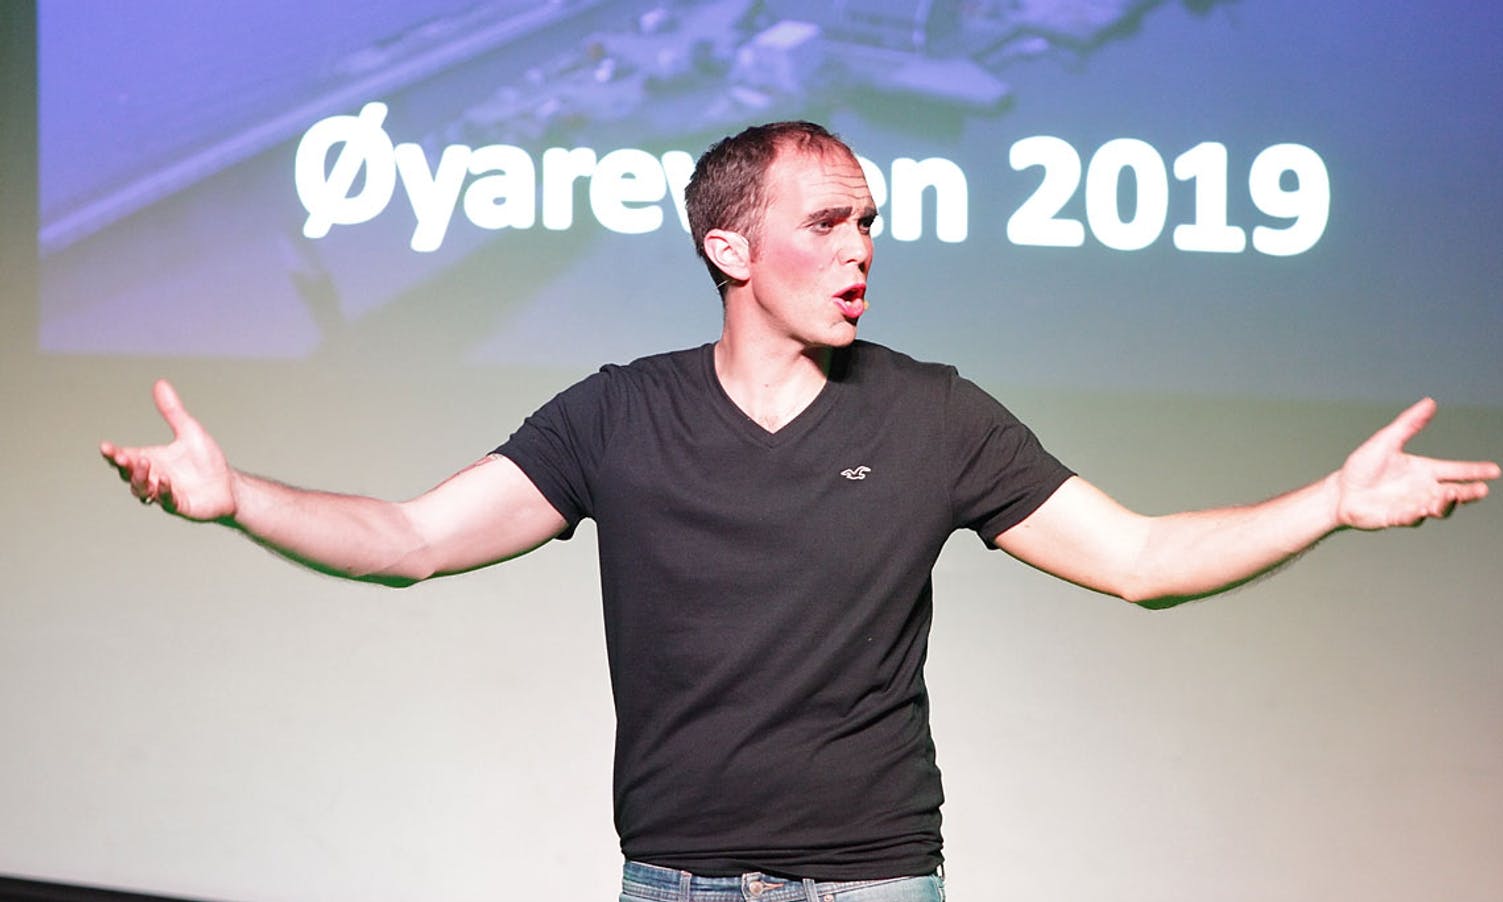 Asbjørn Austevoll, her på scenen under Øyarevyen i 2019. (Foto: Kjetil Vasby Bruarøy)